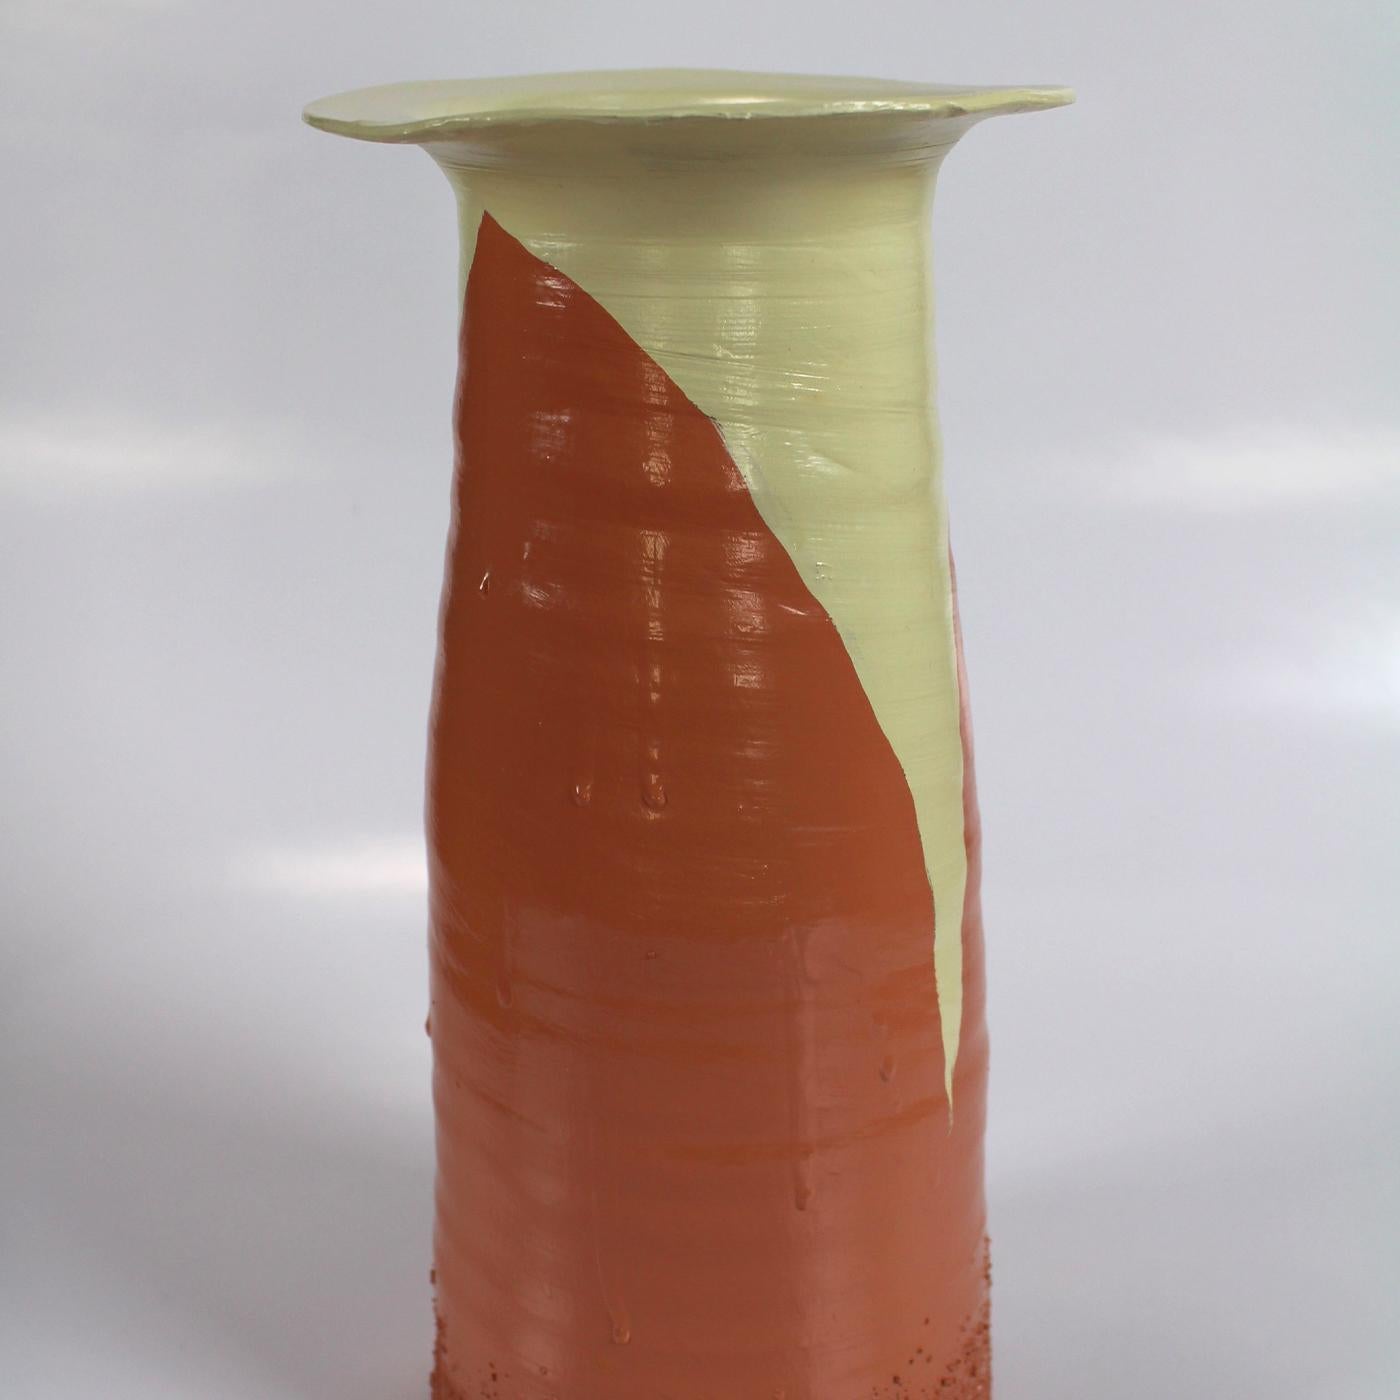 Imprégnant d'une élégance brute un intérieur moderne, ce vase fait partie d'une collection conçue par Mascia Meccani en 2019. Il est fait de terre cuite rouge avec une texture frappante qui orne son corps effilé avec une bouche évasée. Elle est